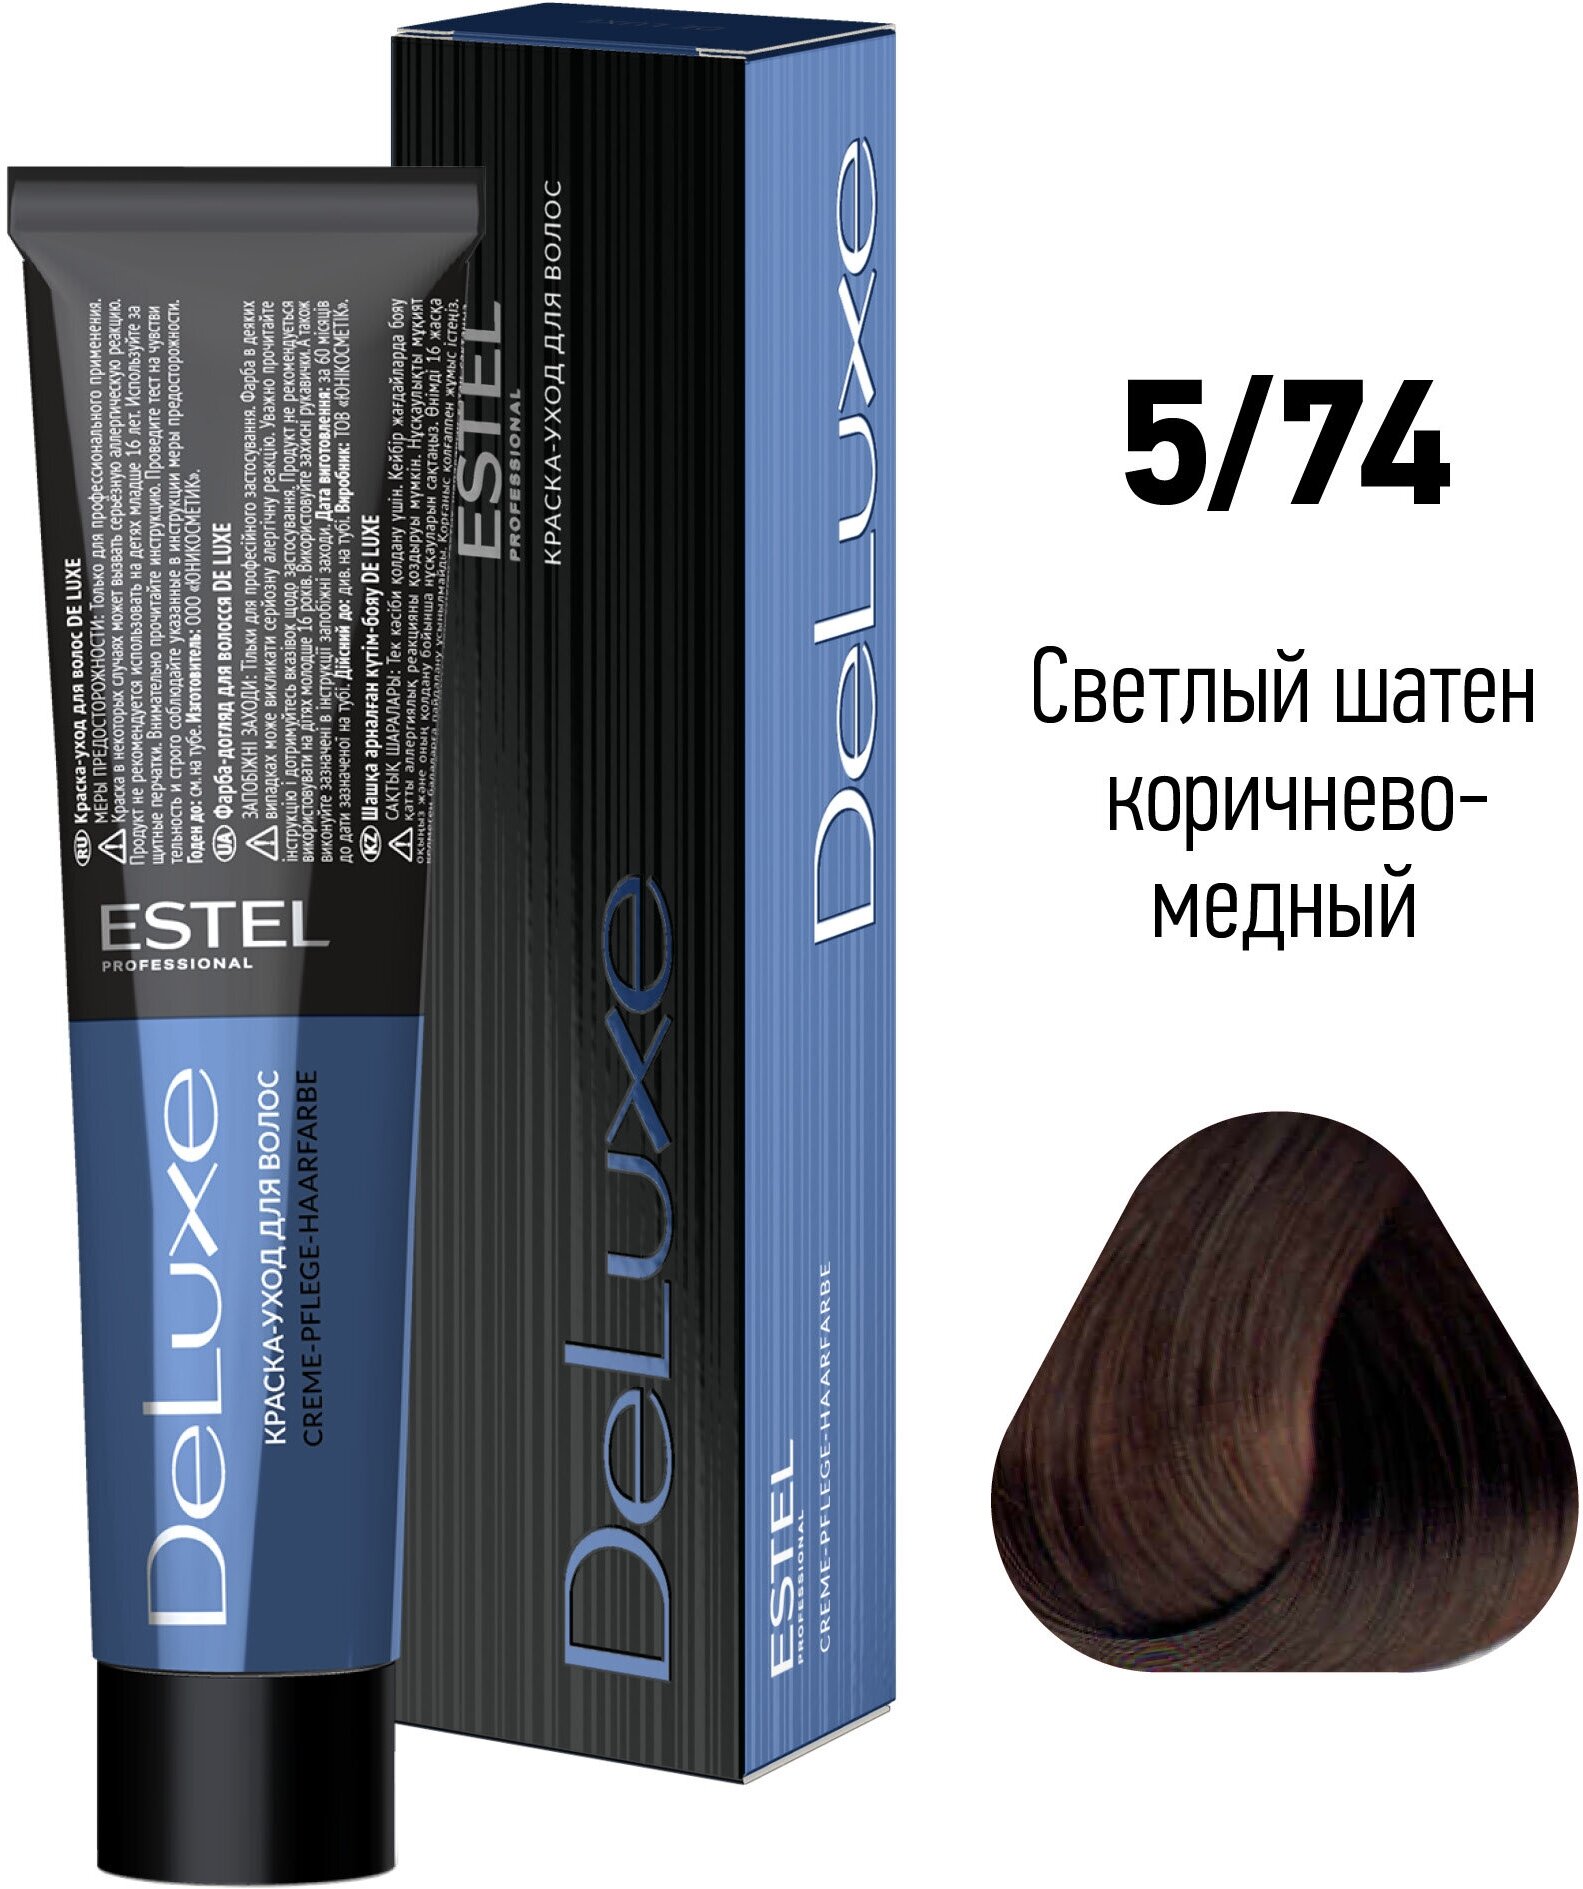 ESTEL De Luxe стойкая краска-уход для волос, 5/74 светлый шатен коричнево-медный, 60 мл - фотография № 17